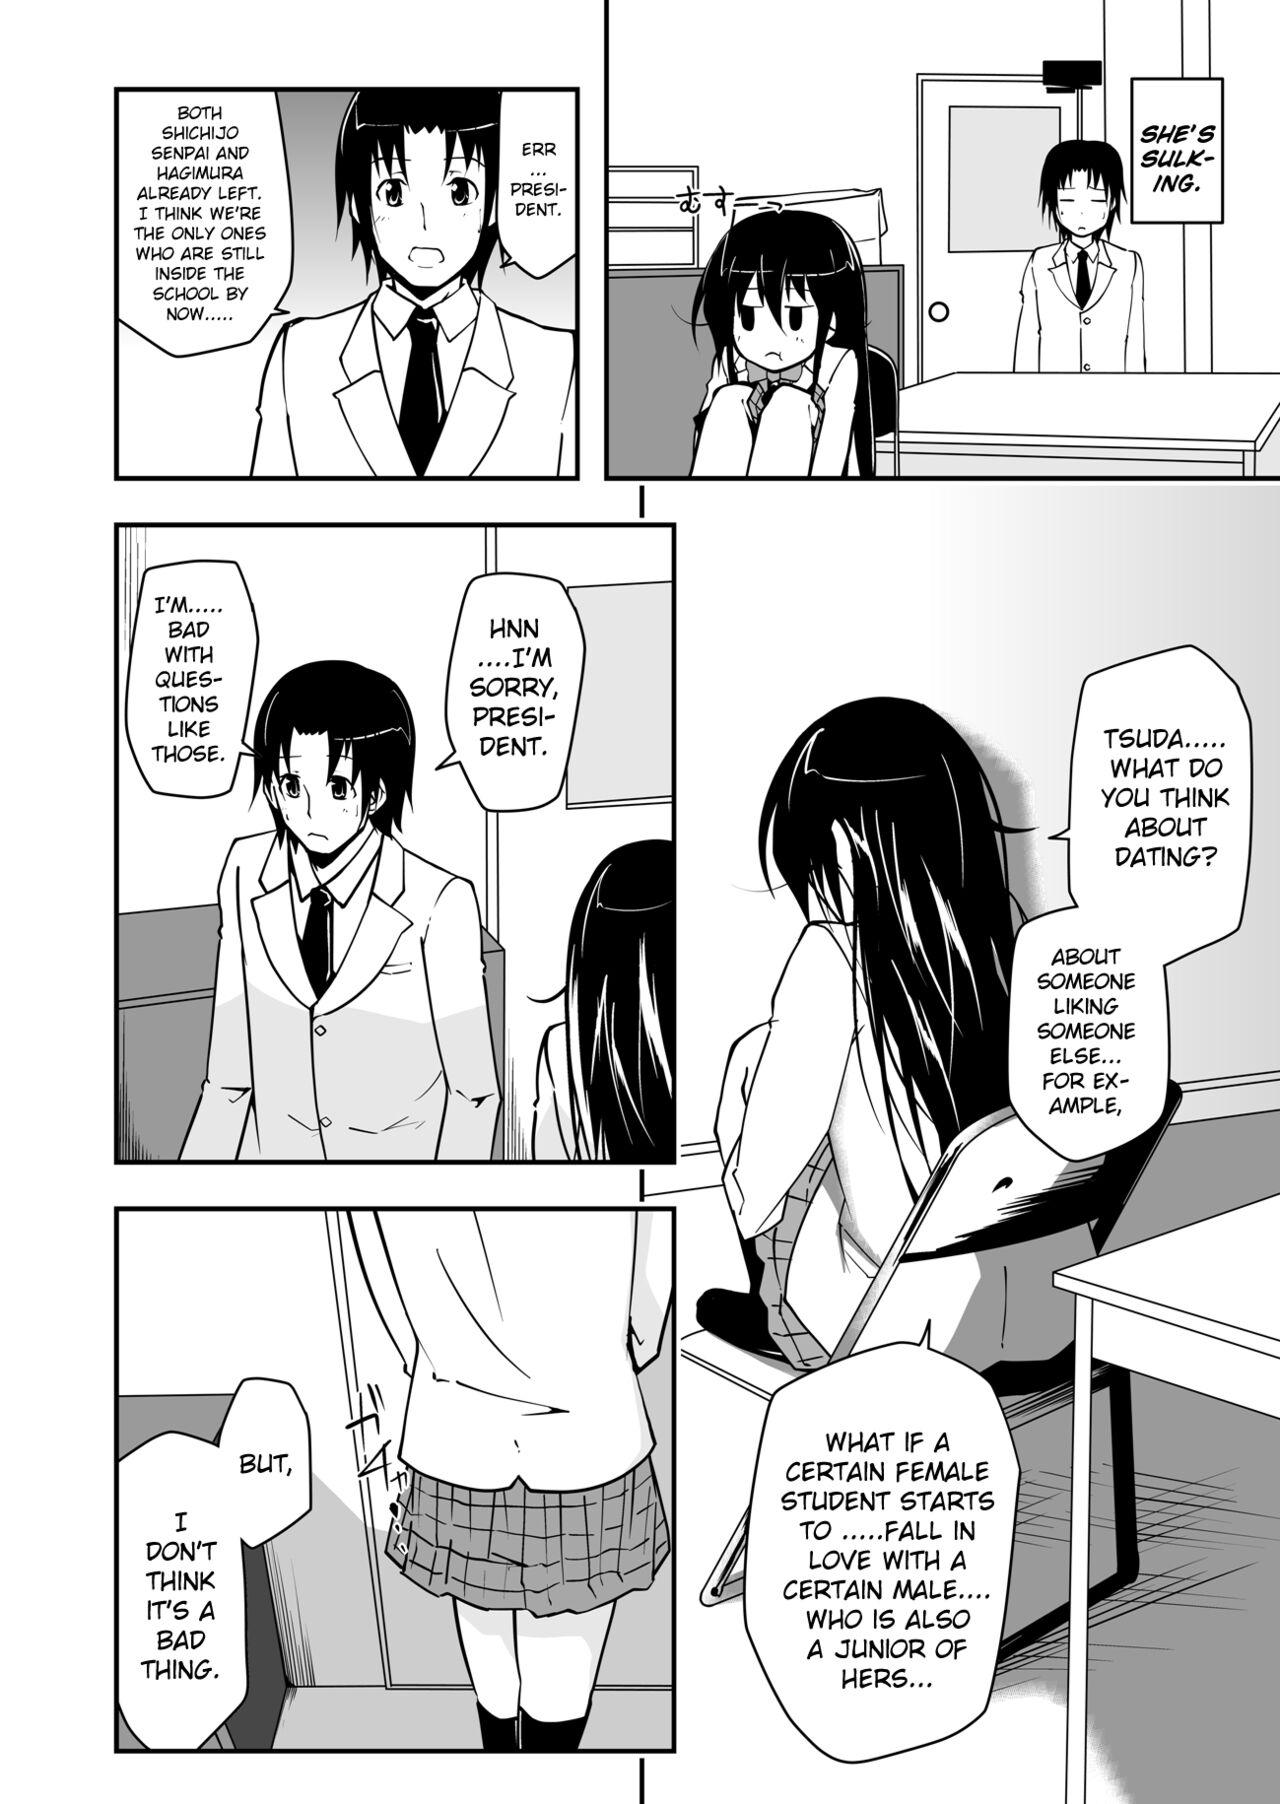 Gayporn *********! 1 - Seitokai yakuindomo Bigbooty - Page 4